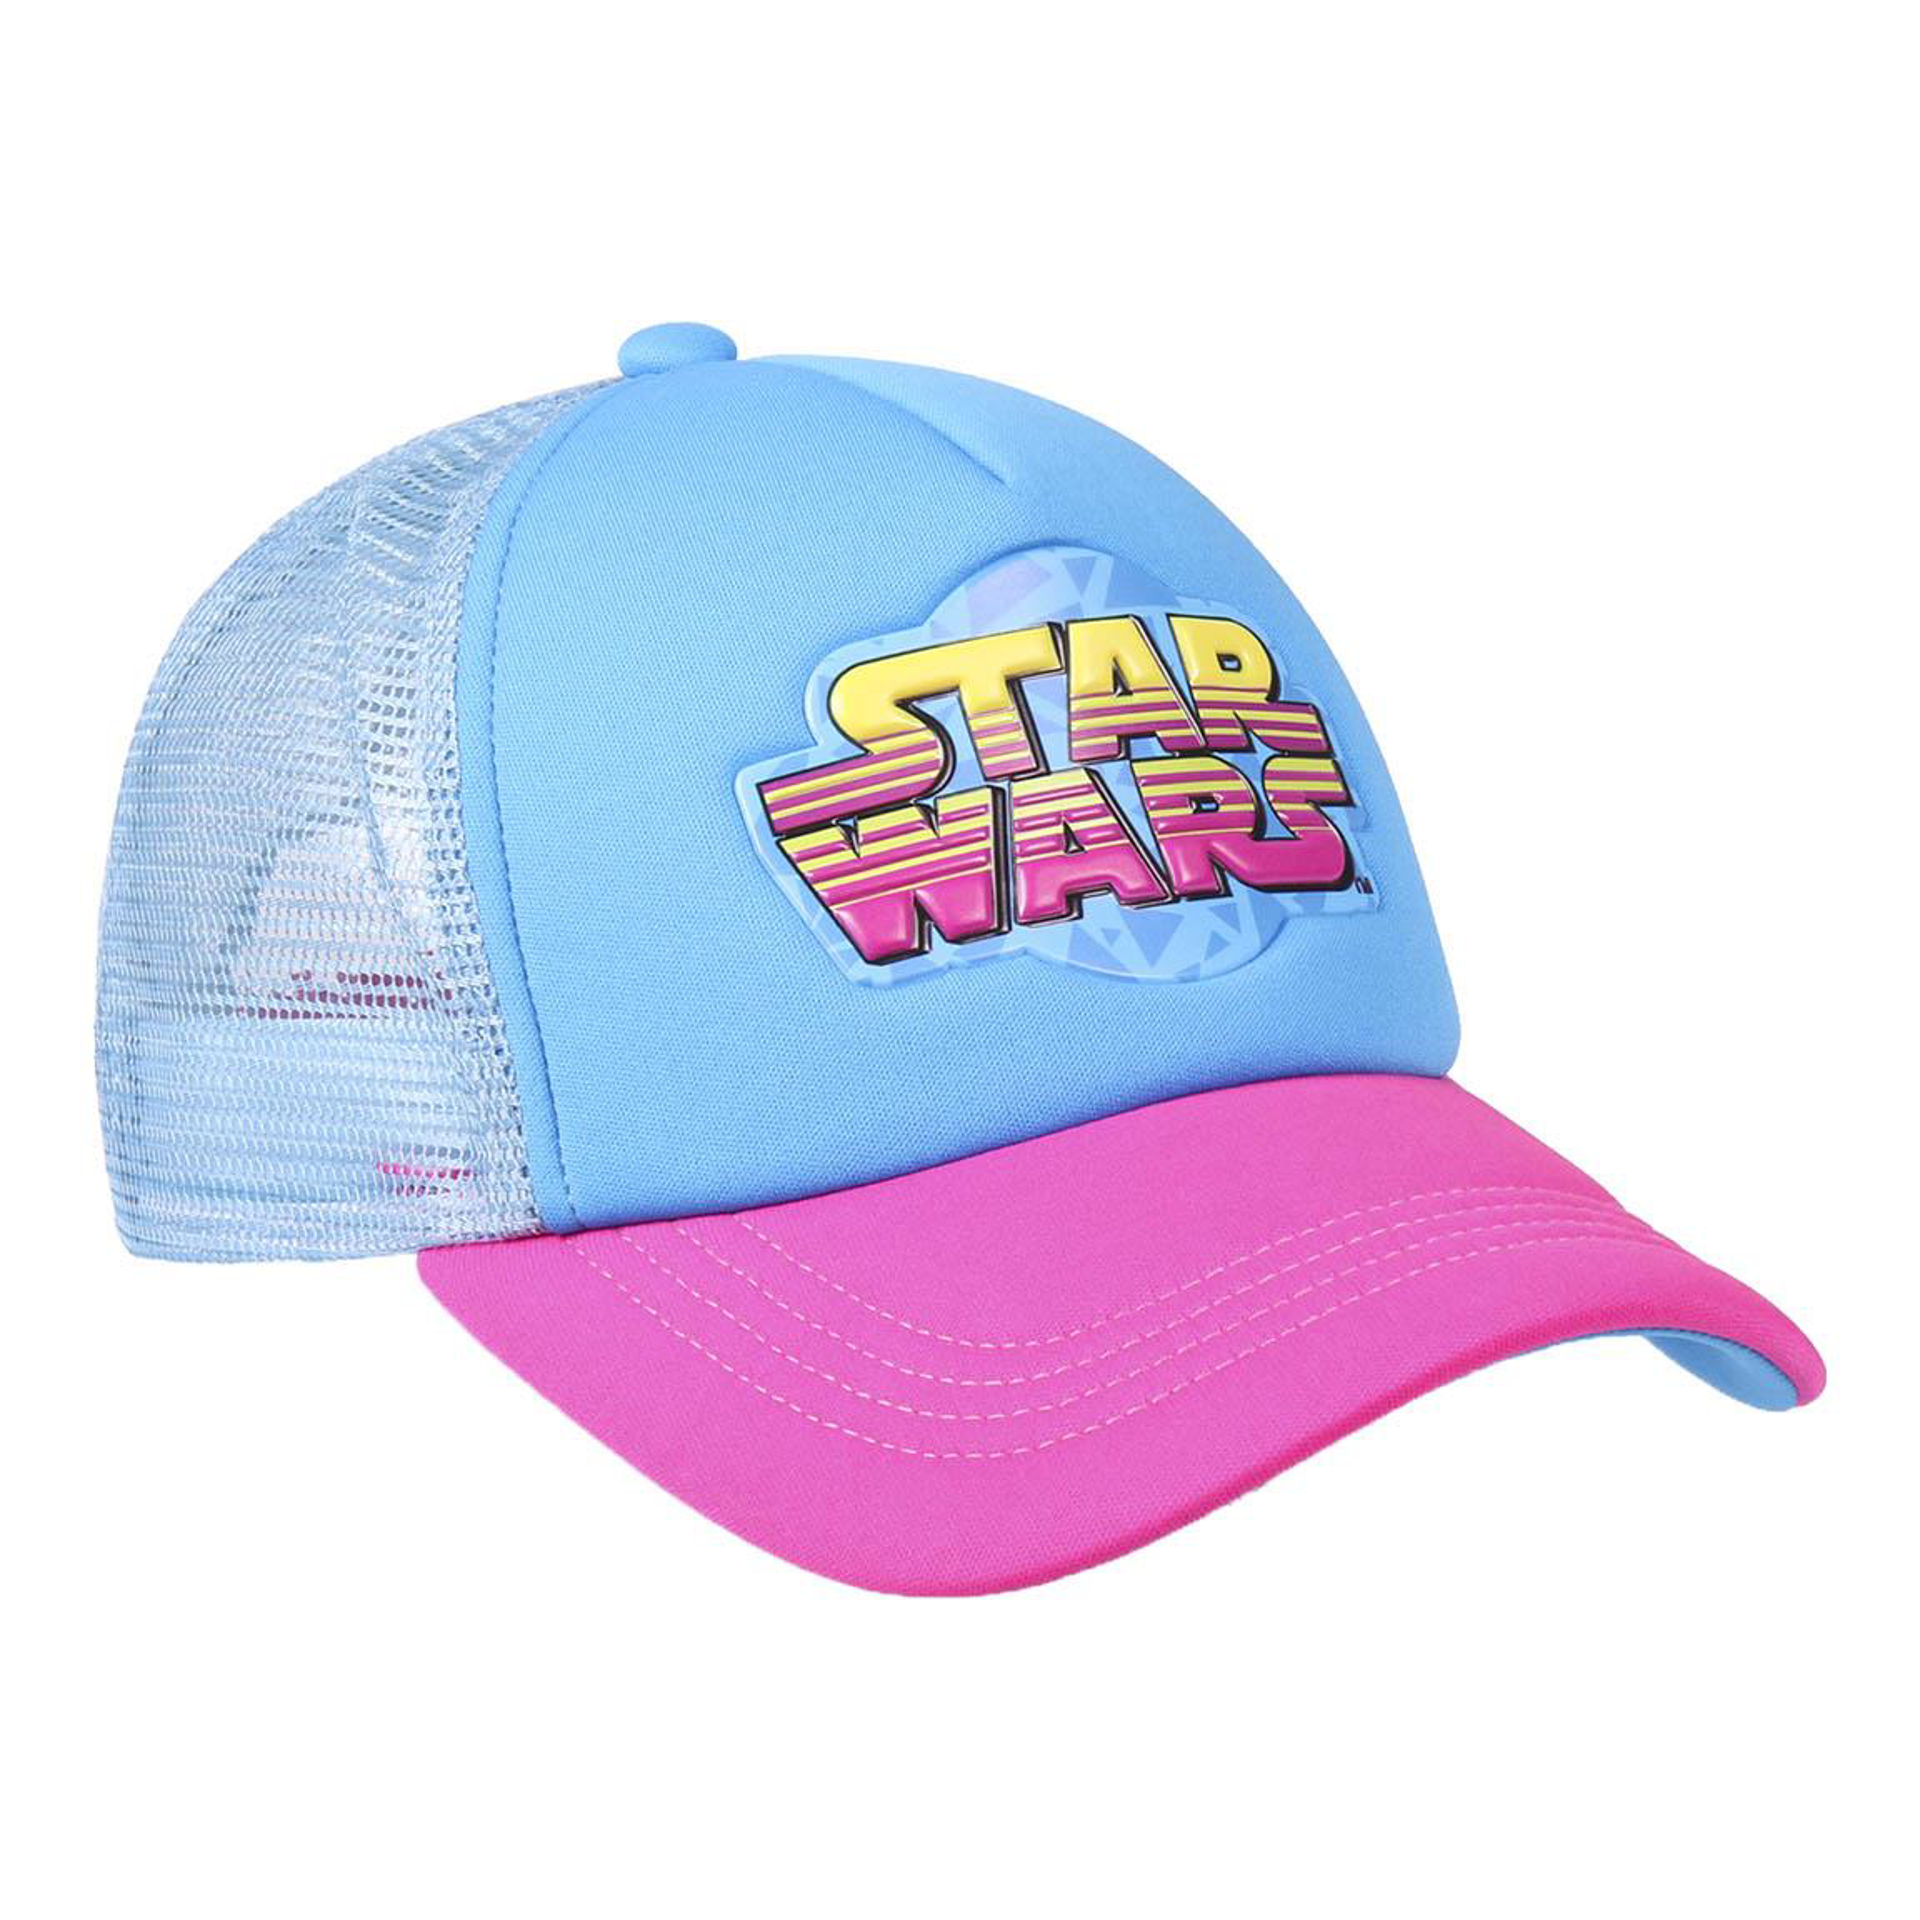 Star Wars - Casquette de baseball rétro bleue et rose